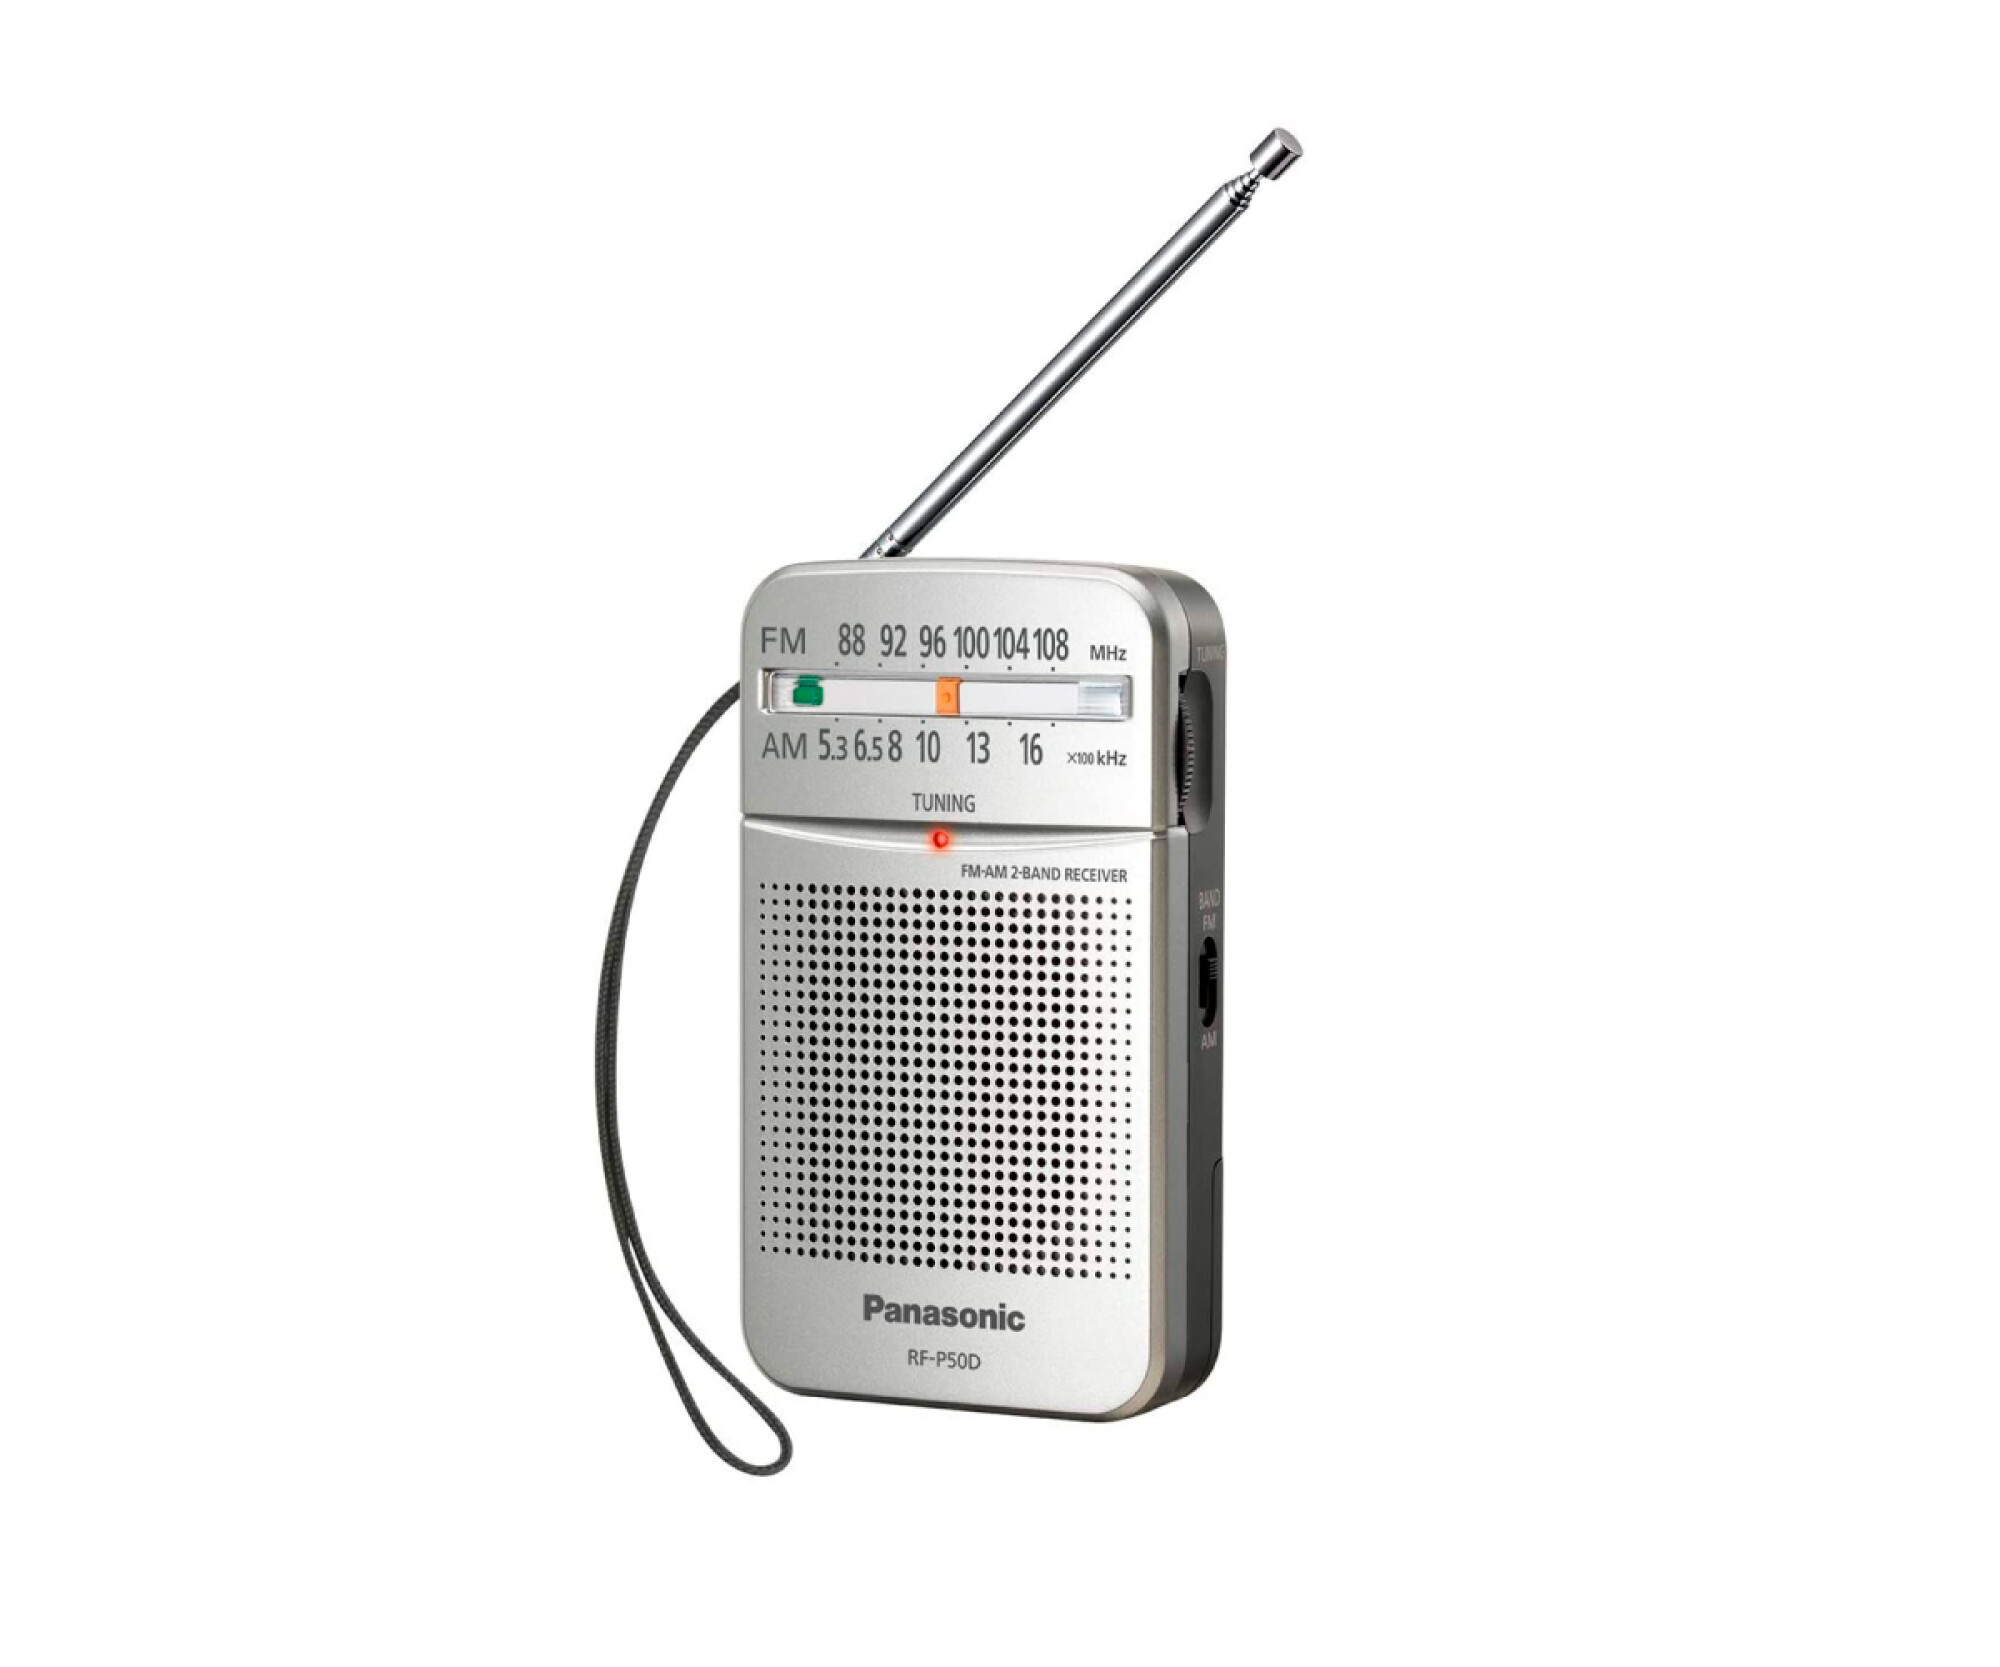 Radio Portátil y Despertador - Panasonic ES